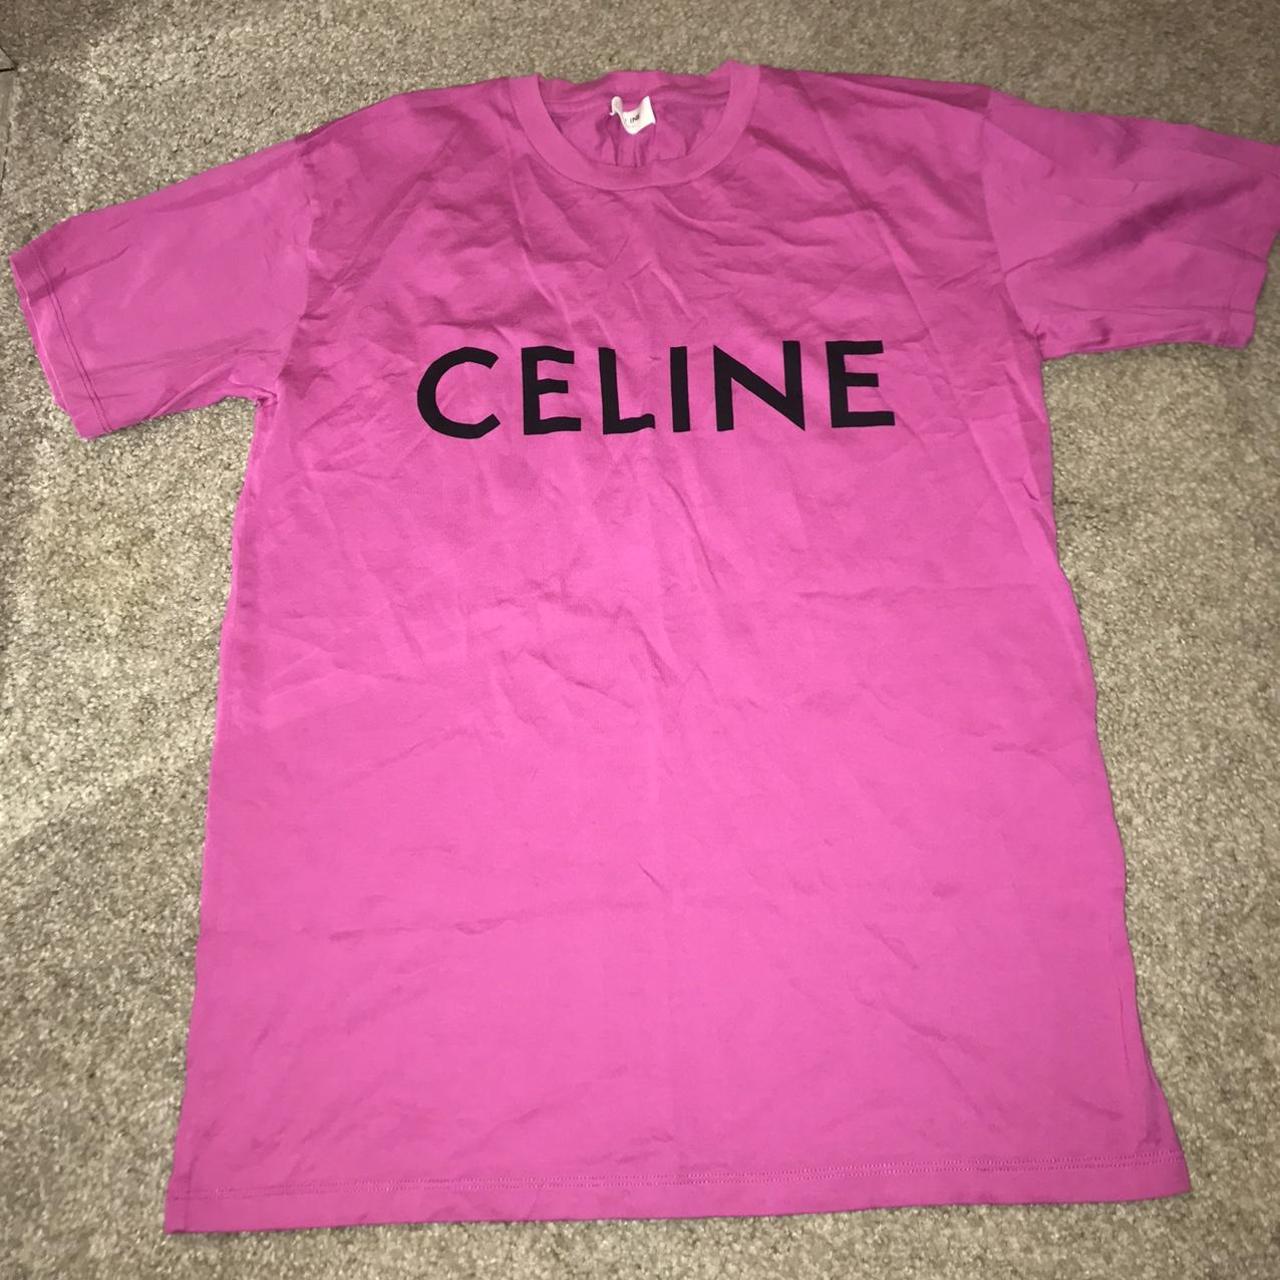 Large Celine Black T-shirt Brand new #designer - Depop